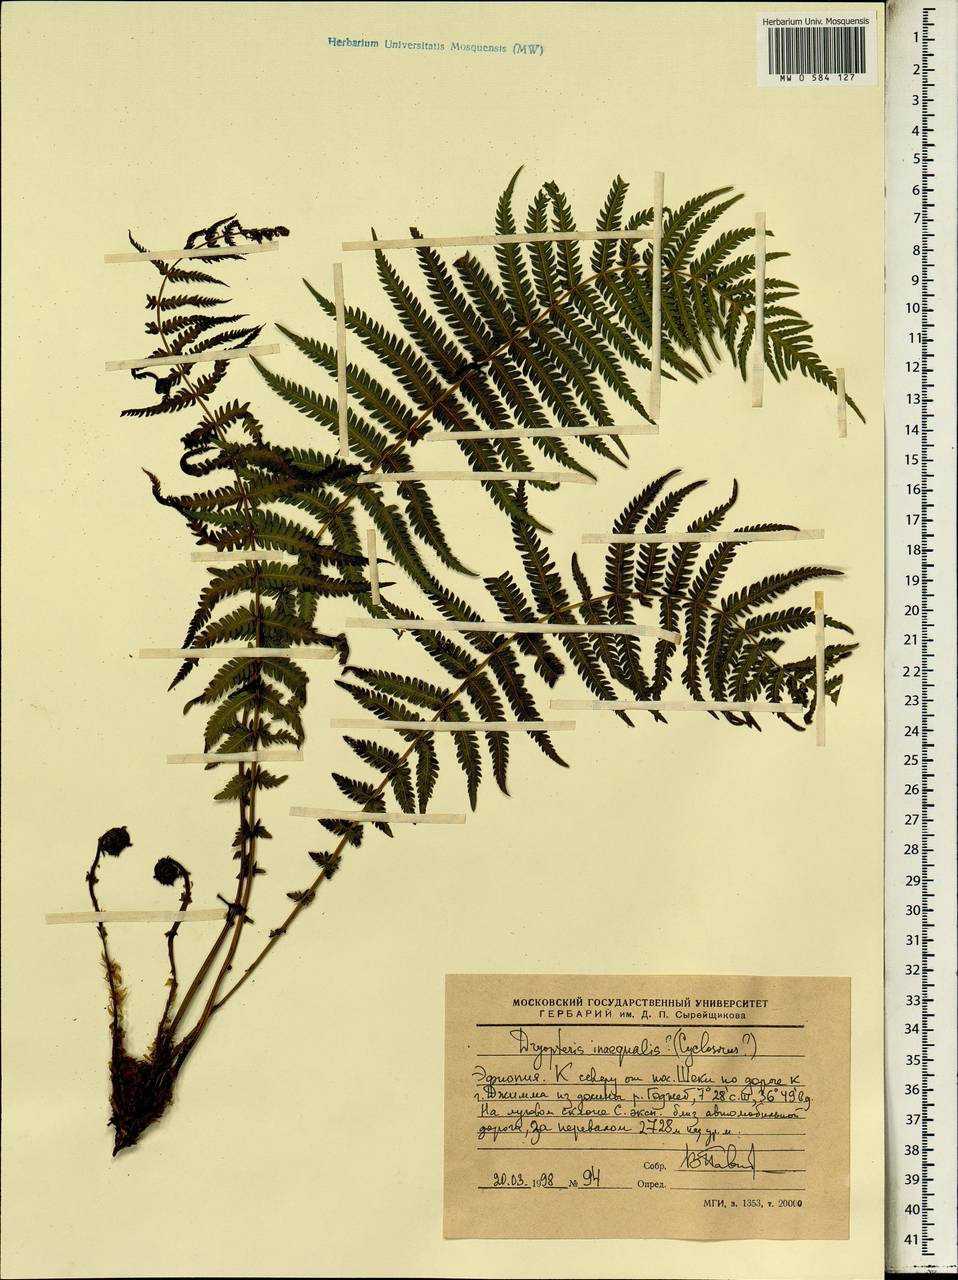 Dryopteris inaequalis (Schltdl.) Kuntze, Africa (AFR) (Ethiopia)